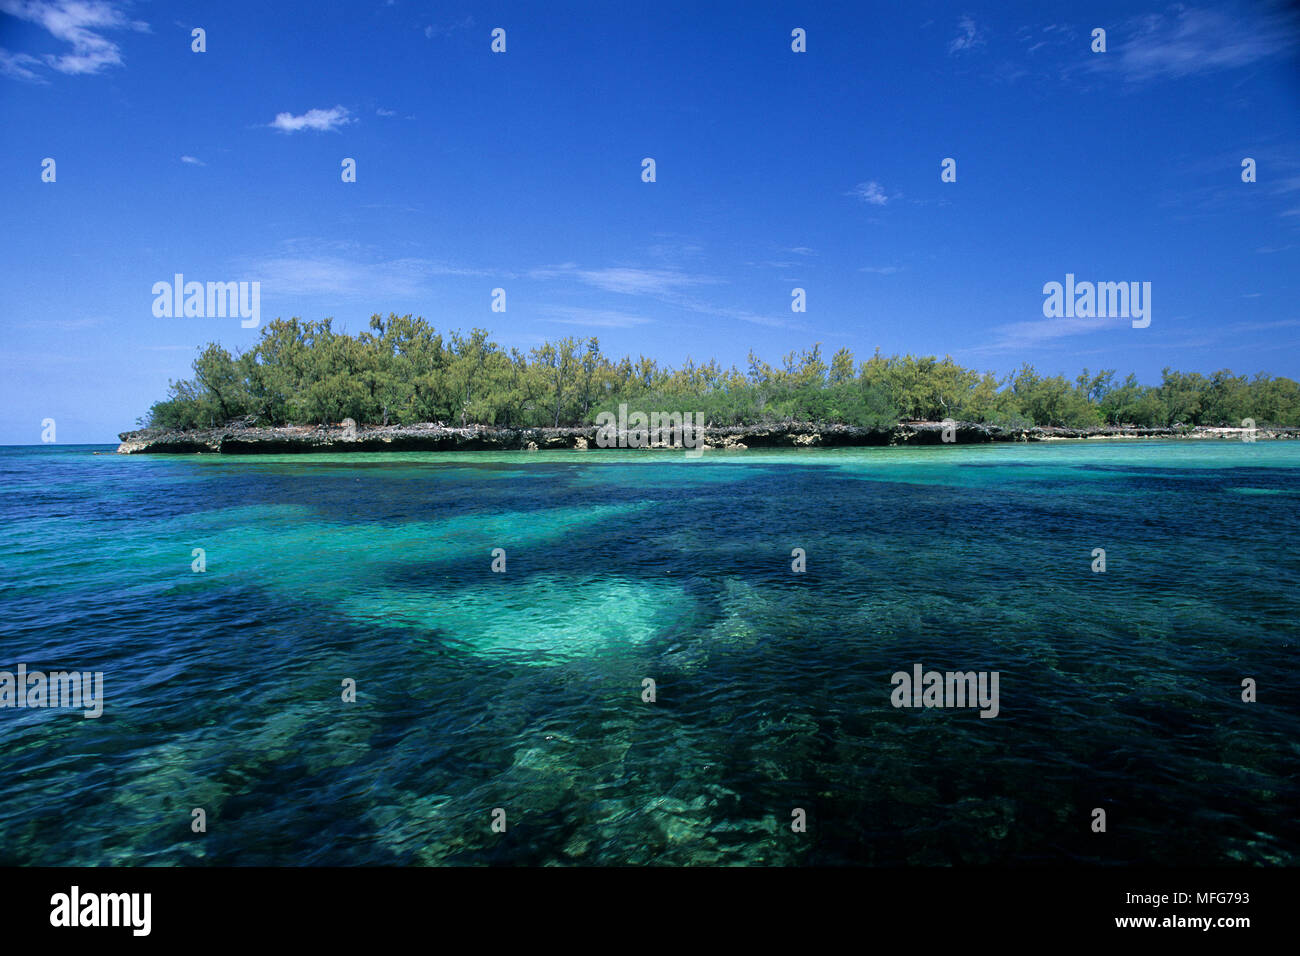 Uno dei canali di ingresso alla laguna, Aldabra Atoll, patrimonio mondiale naturale, Seychelles, Oceano Indiano Data: 24.06.08 RIF: ZB777 115630 000 Foto Stock